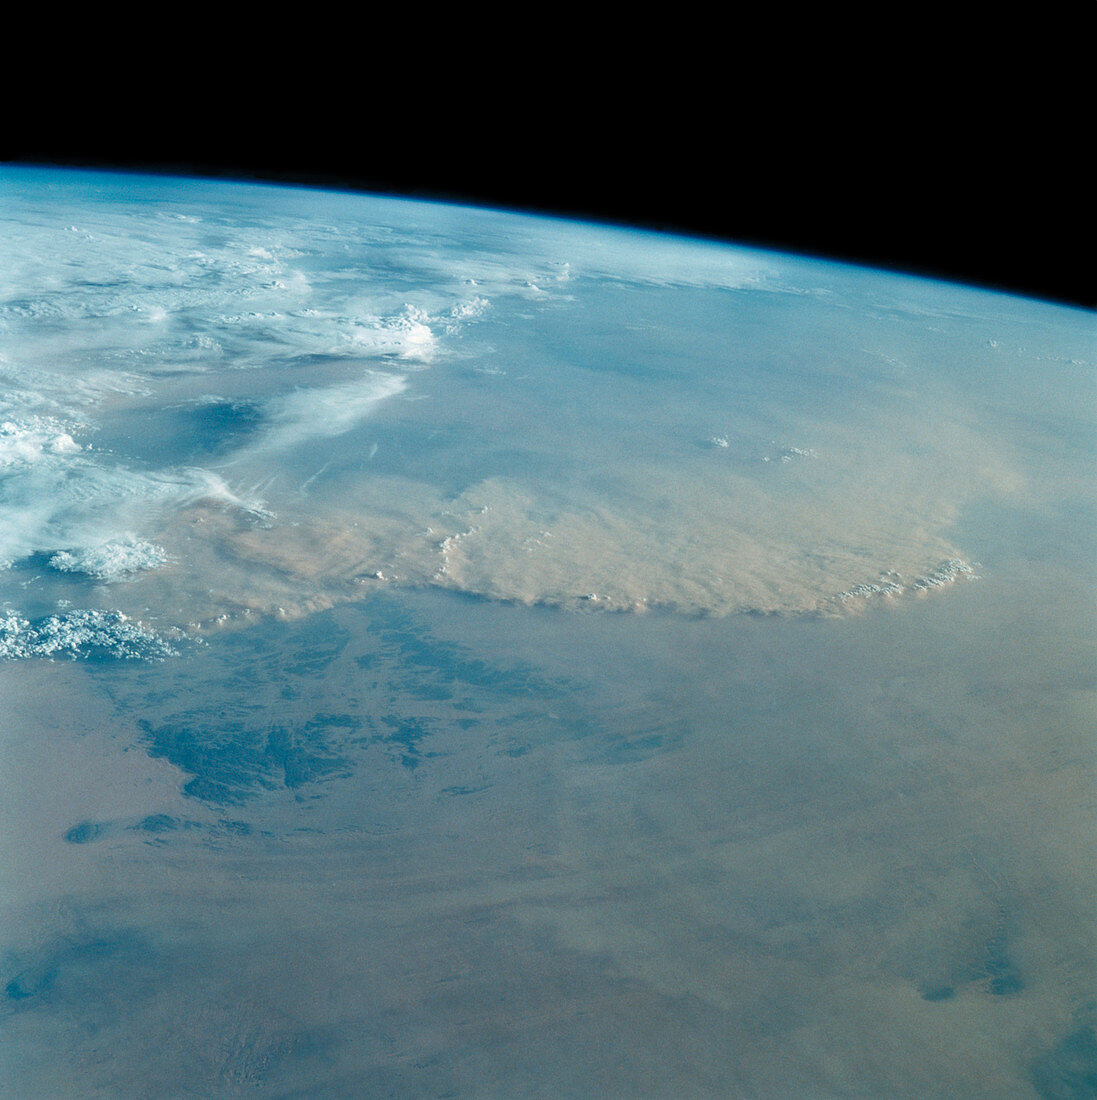 Dust storm over Sahara desert from Space Shuttle